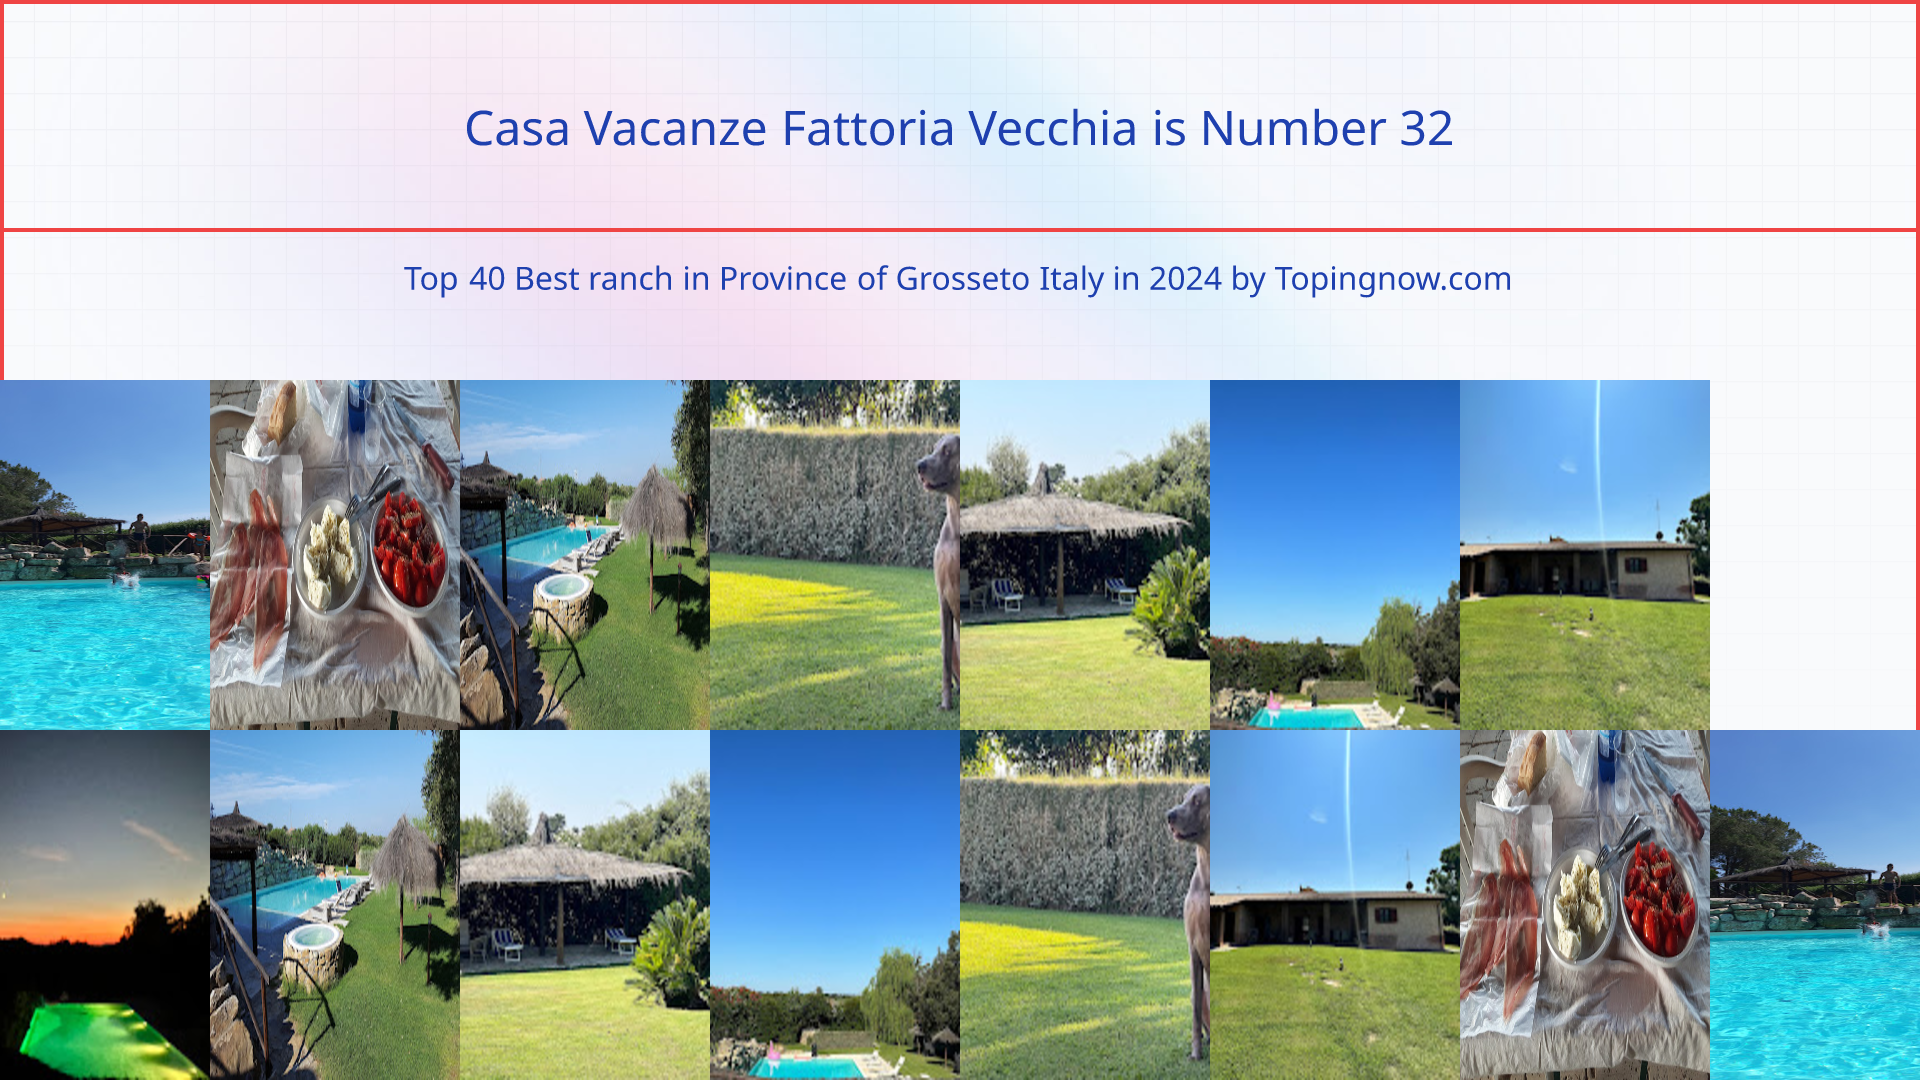 Casa Vacanze Fattoria Vecchia: Top 40 Best ranch in Province of Grosseto Italy in 2024